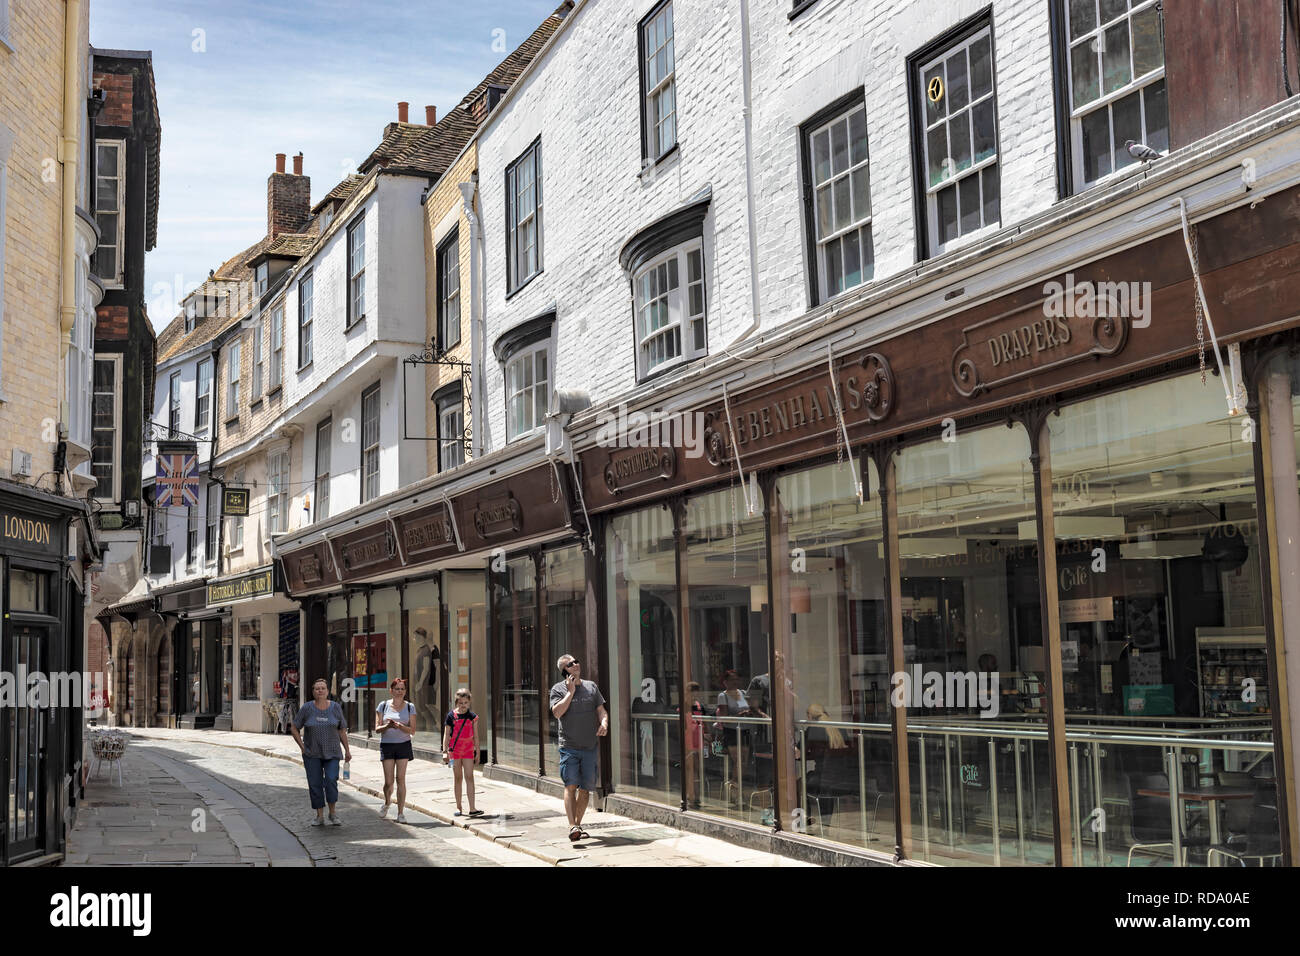 Canterbury, England - 24. Juni 2018: Street View mit alten Gebäuden verwandelte sich in Geschäften und Menschen zu Fuß durch. Stockfoto